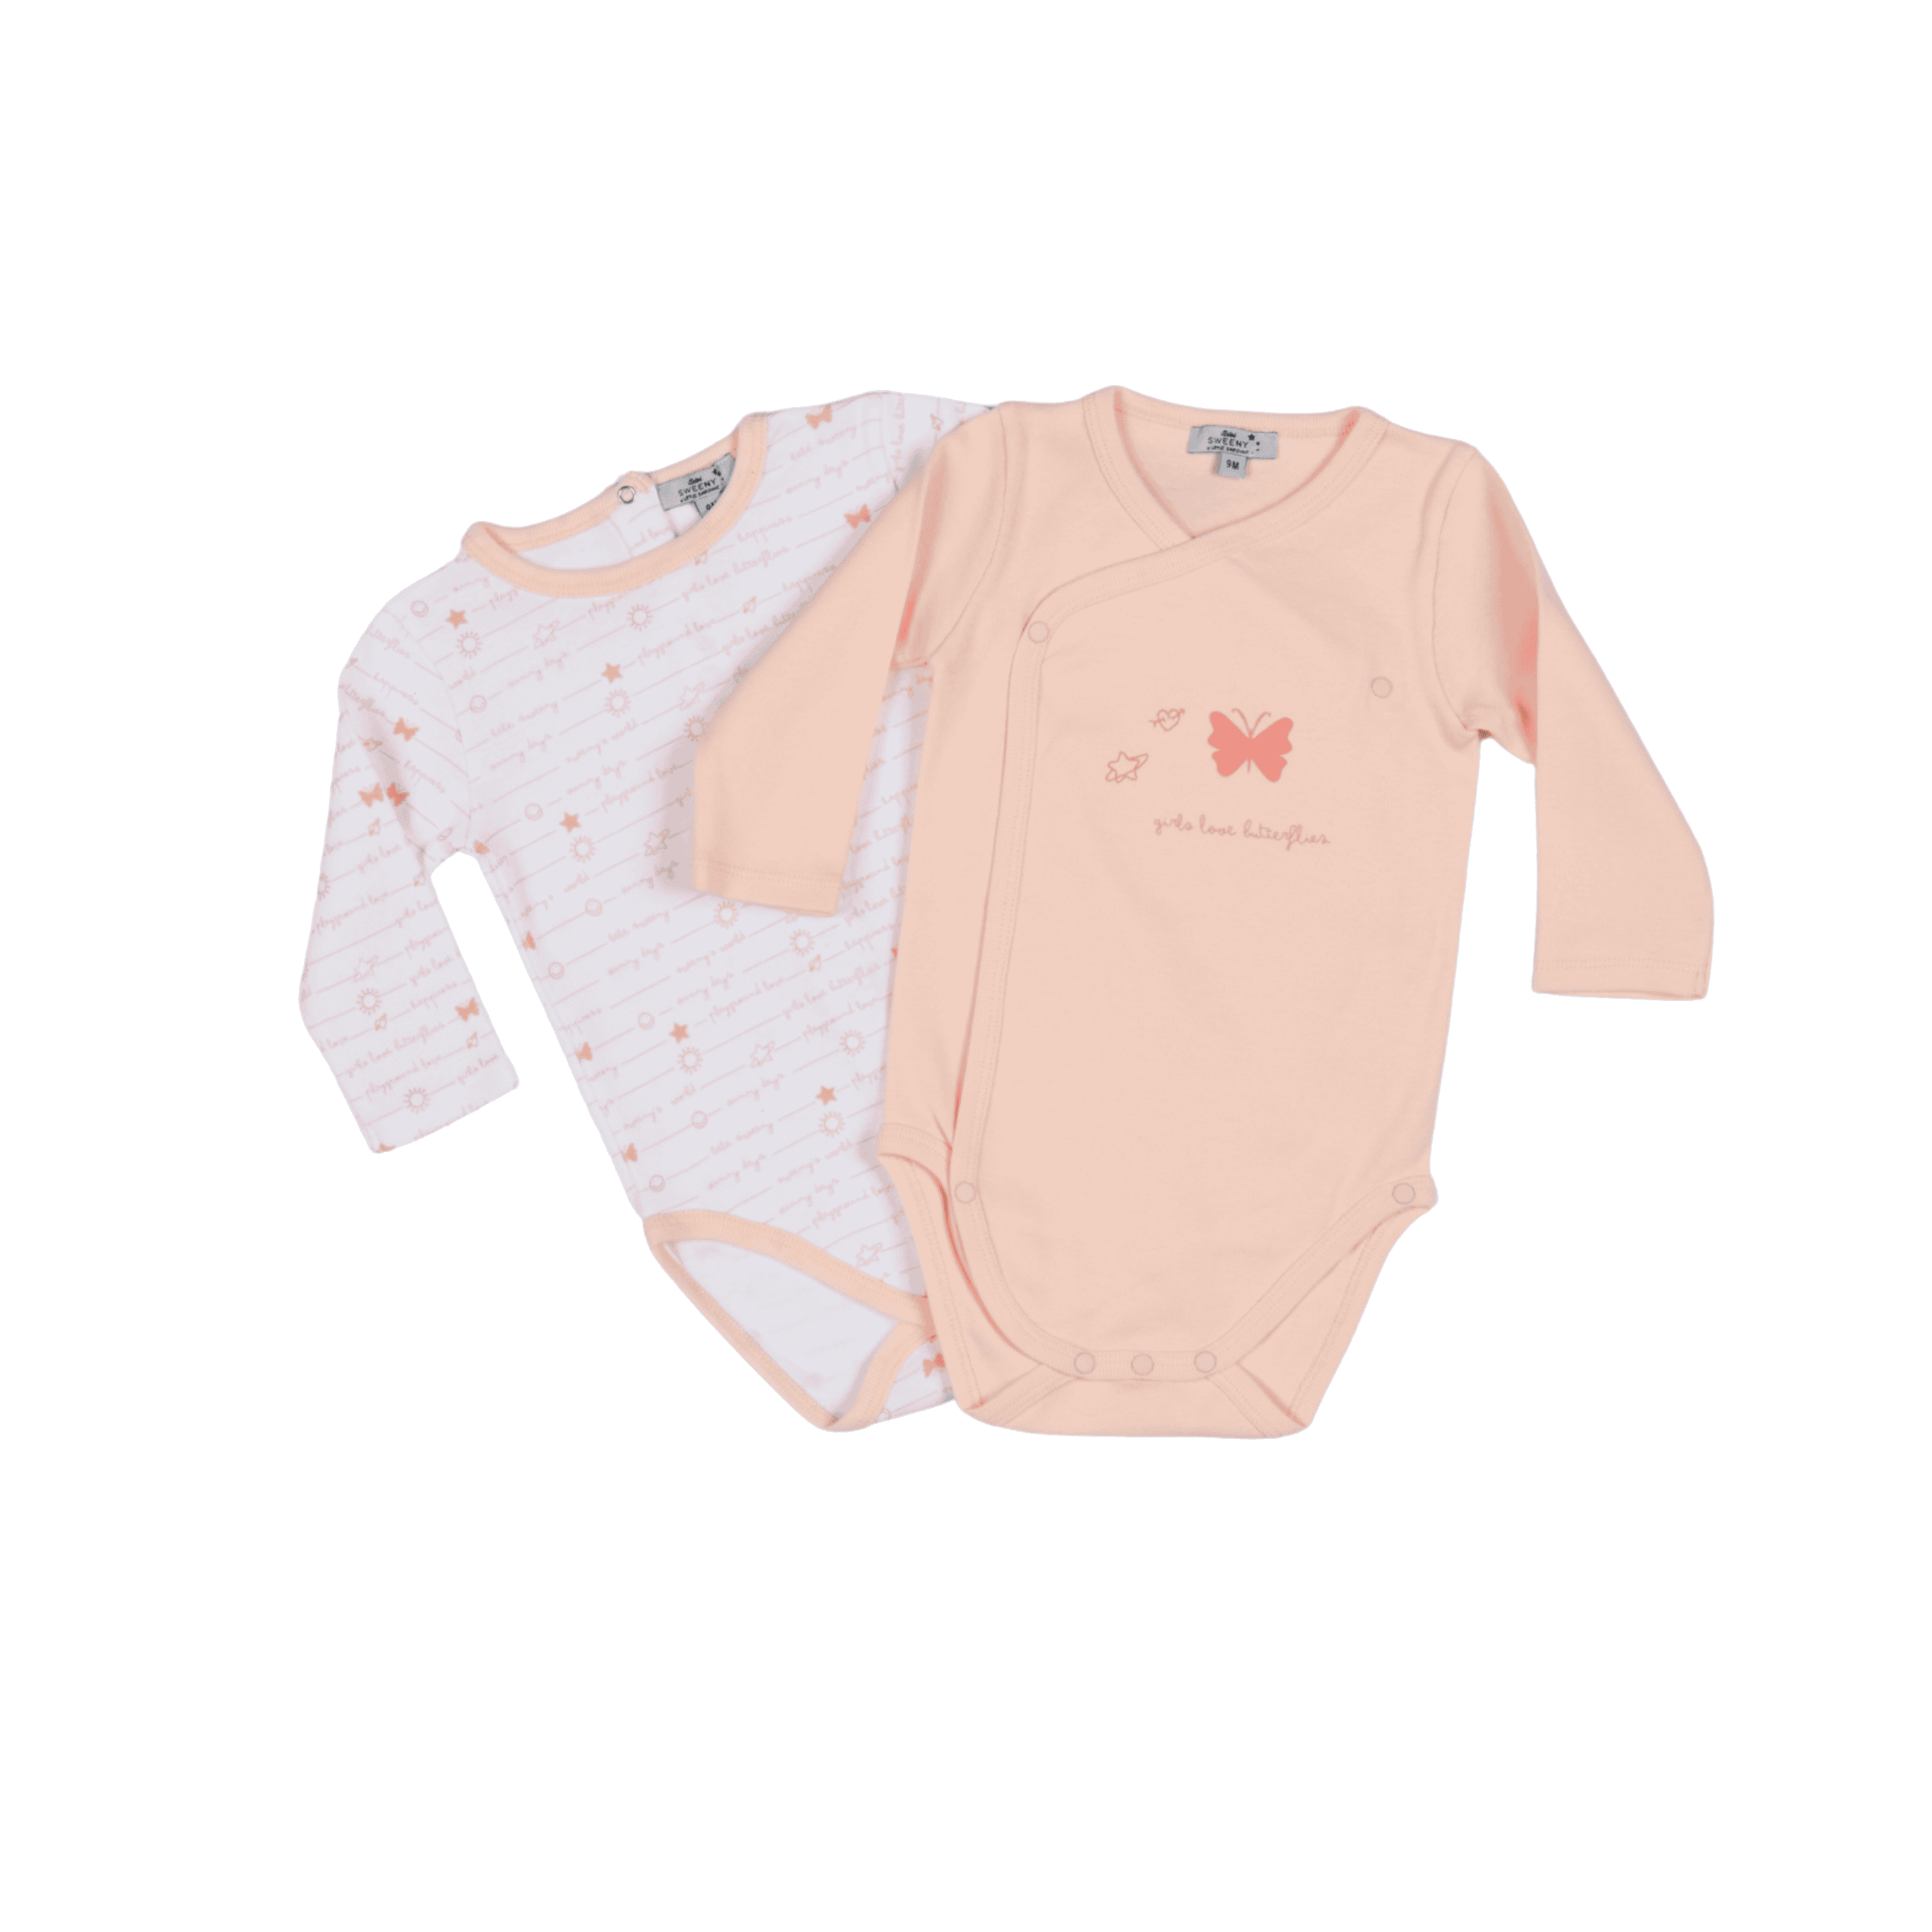 Baby Girls White & Cloud Pink Cotton Bodysuit Set (2)